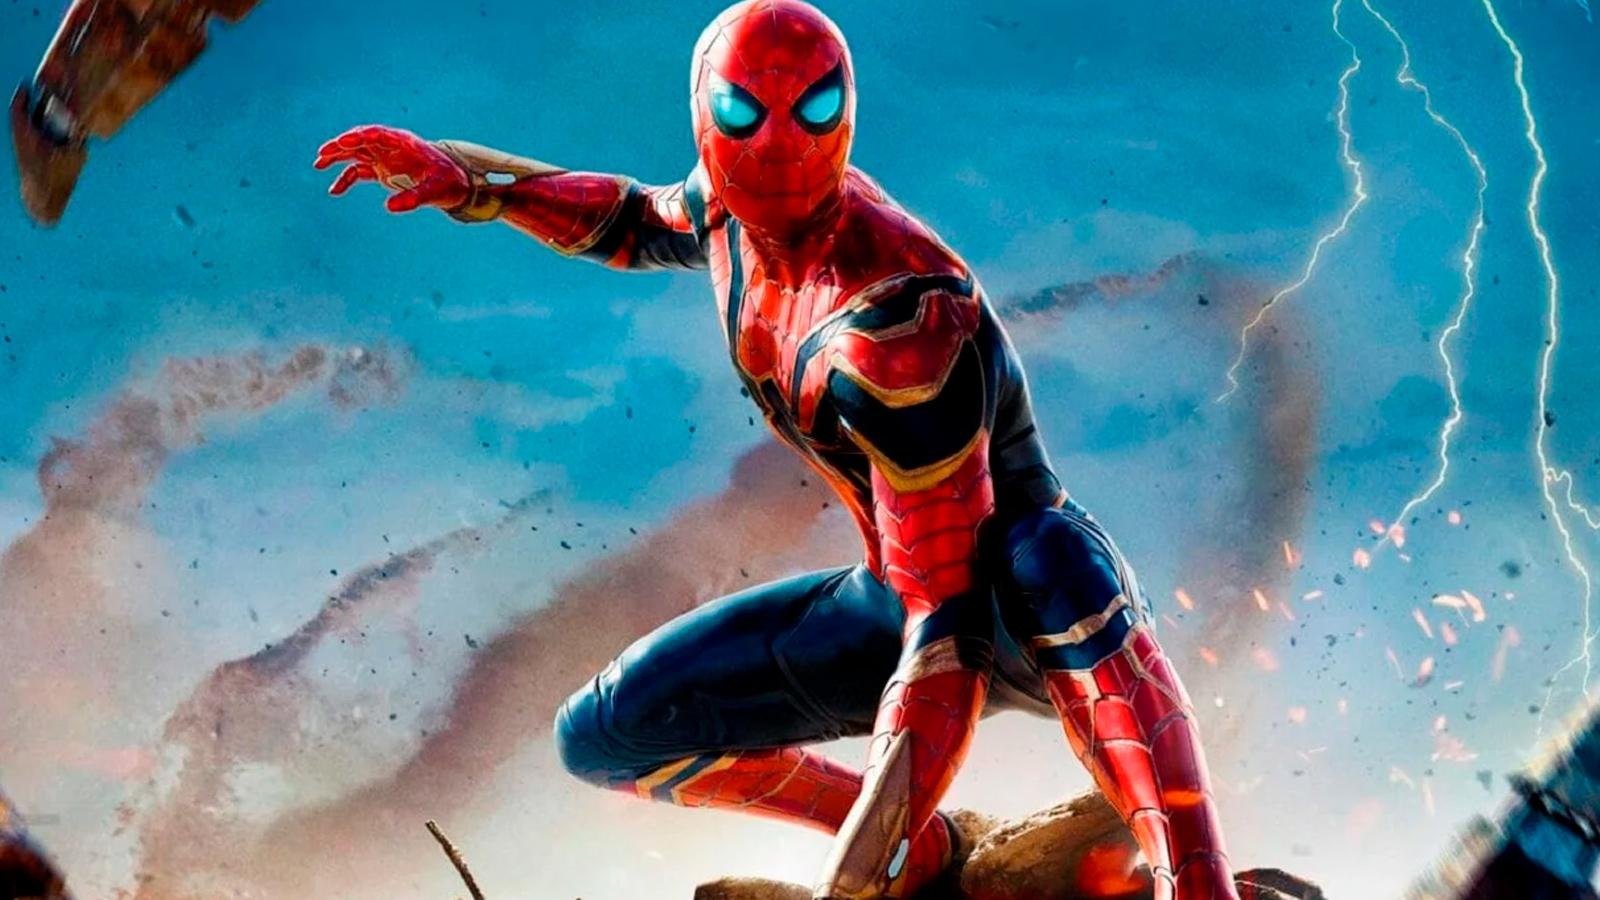 Por que os críticos odeiam o filme dos seus super-heróis favoritos?